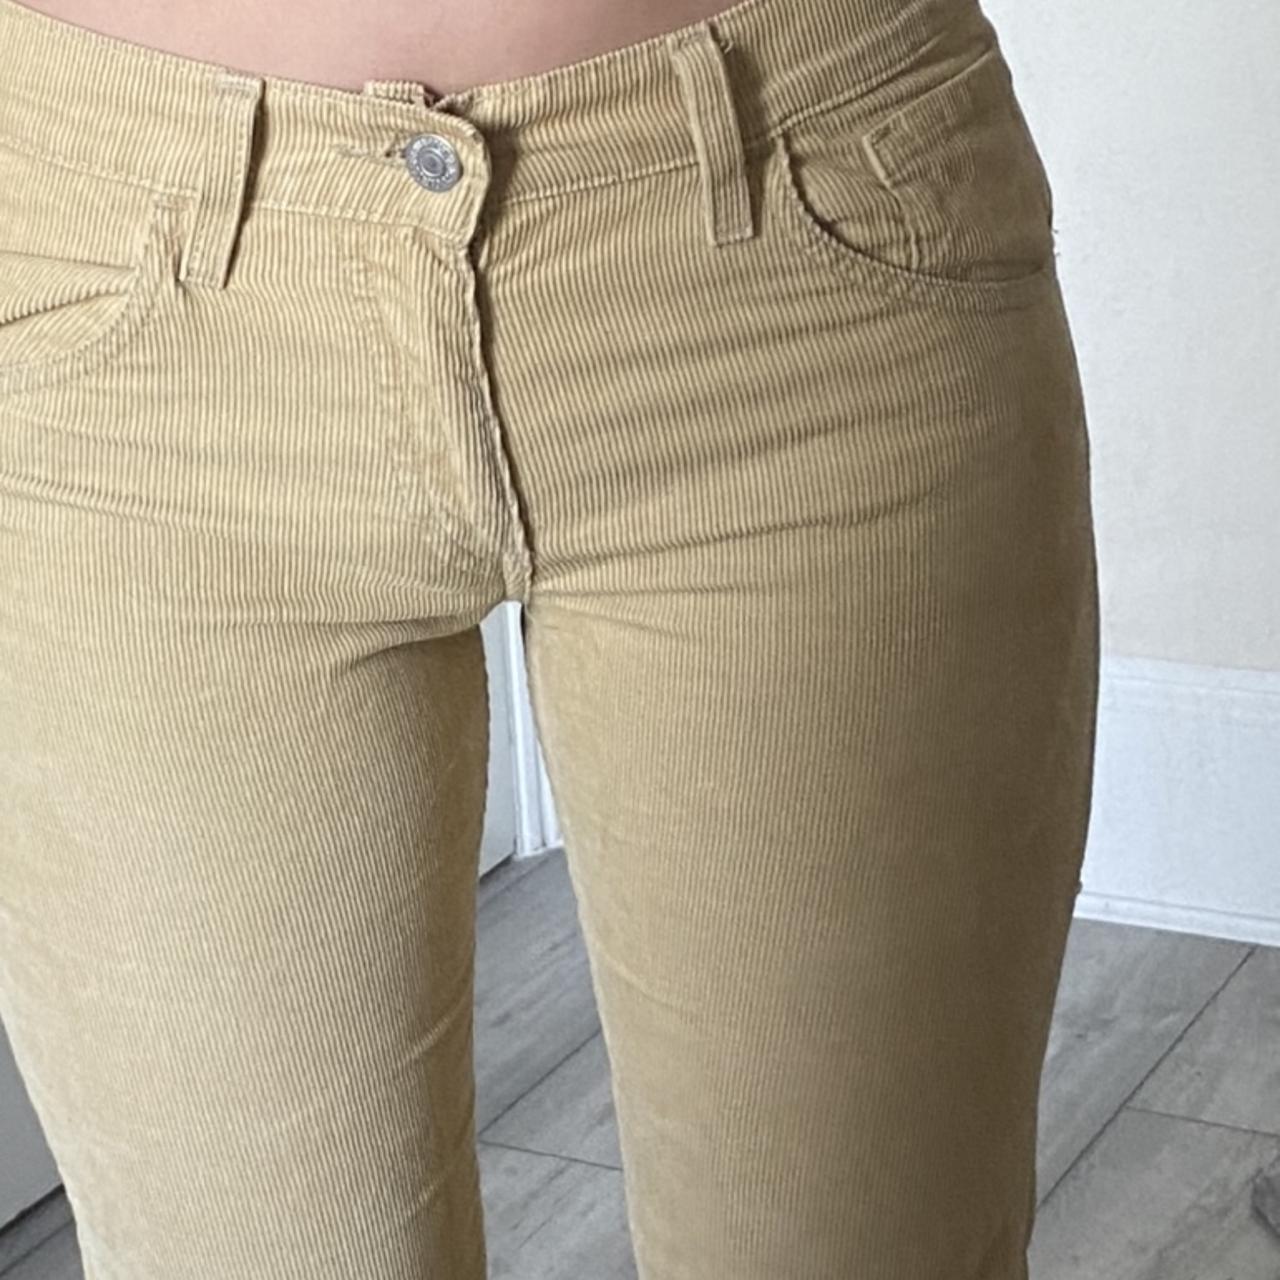 Levi's Women's Tan Jeans | Depop